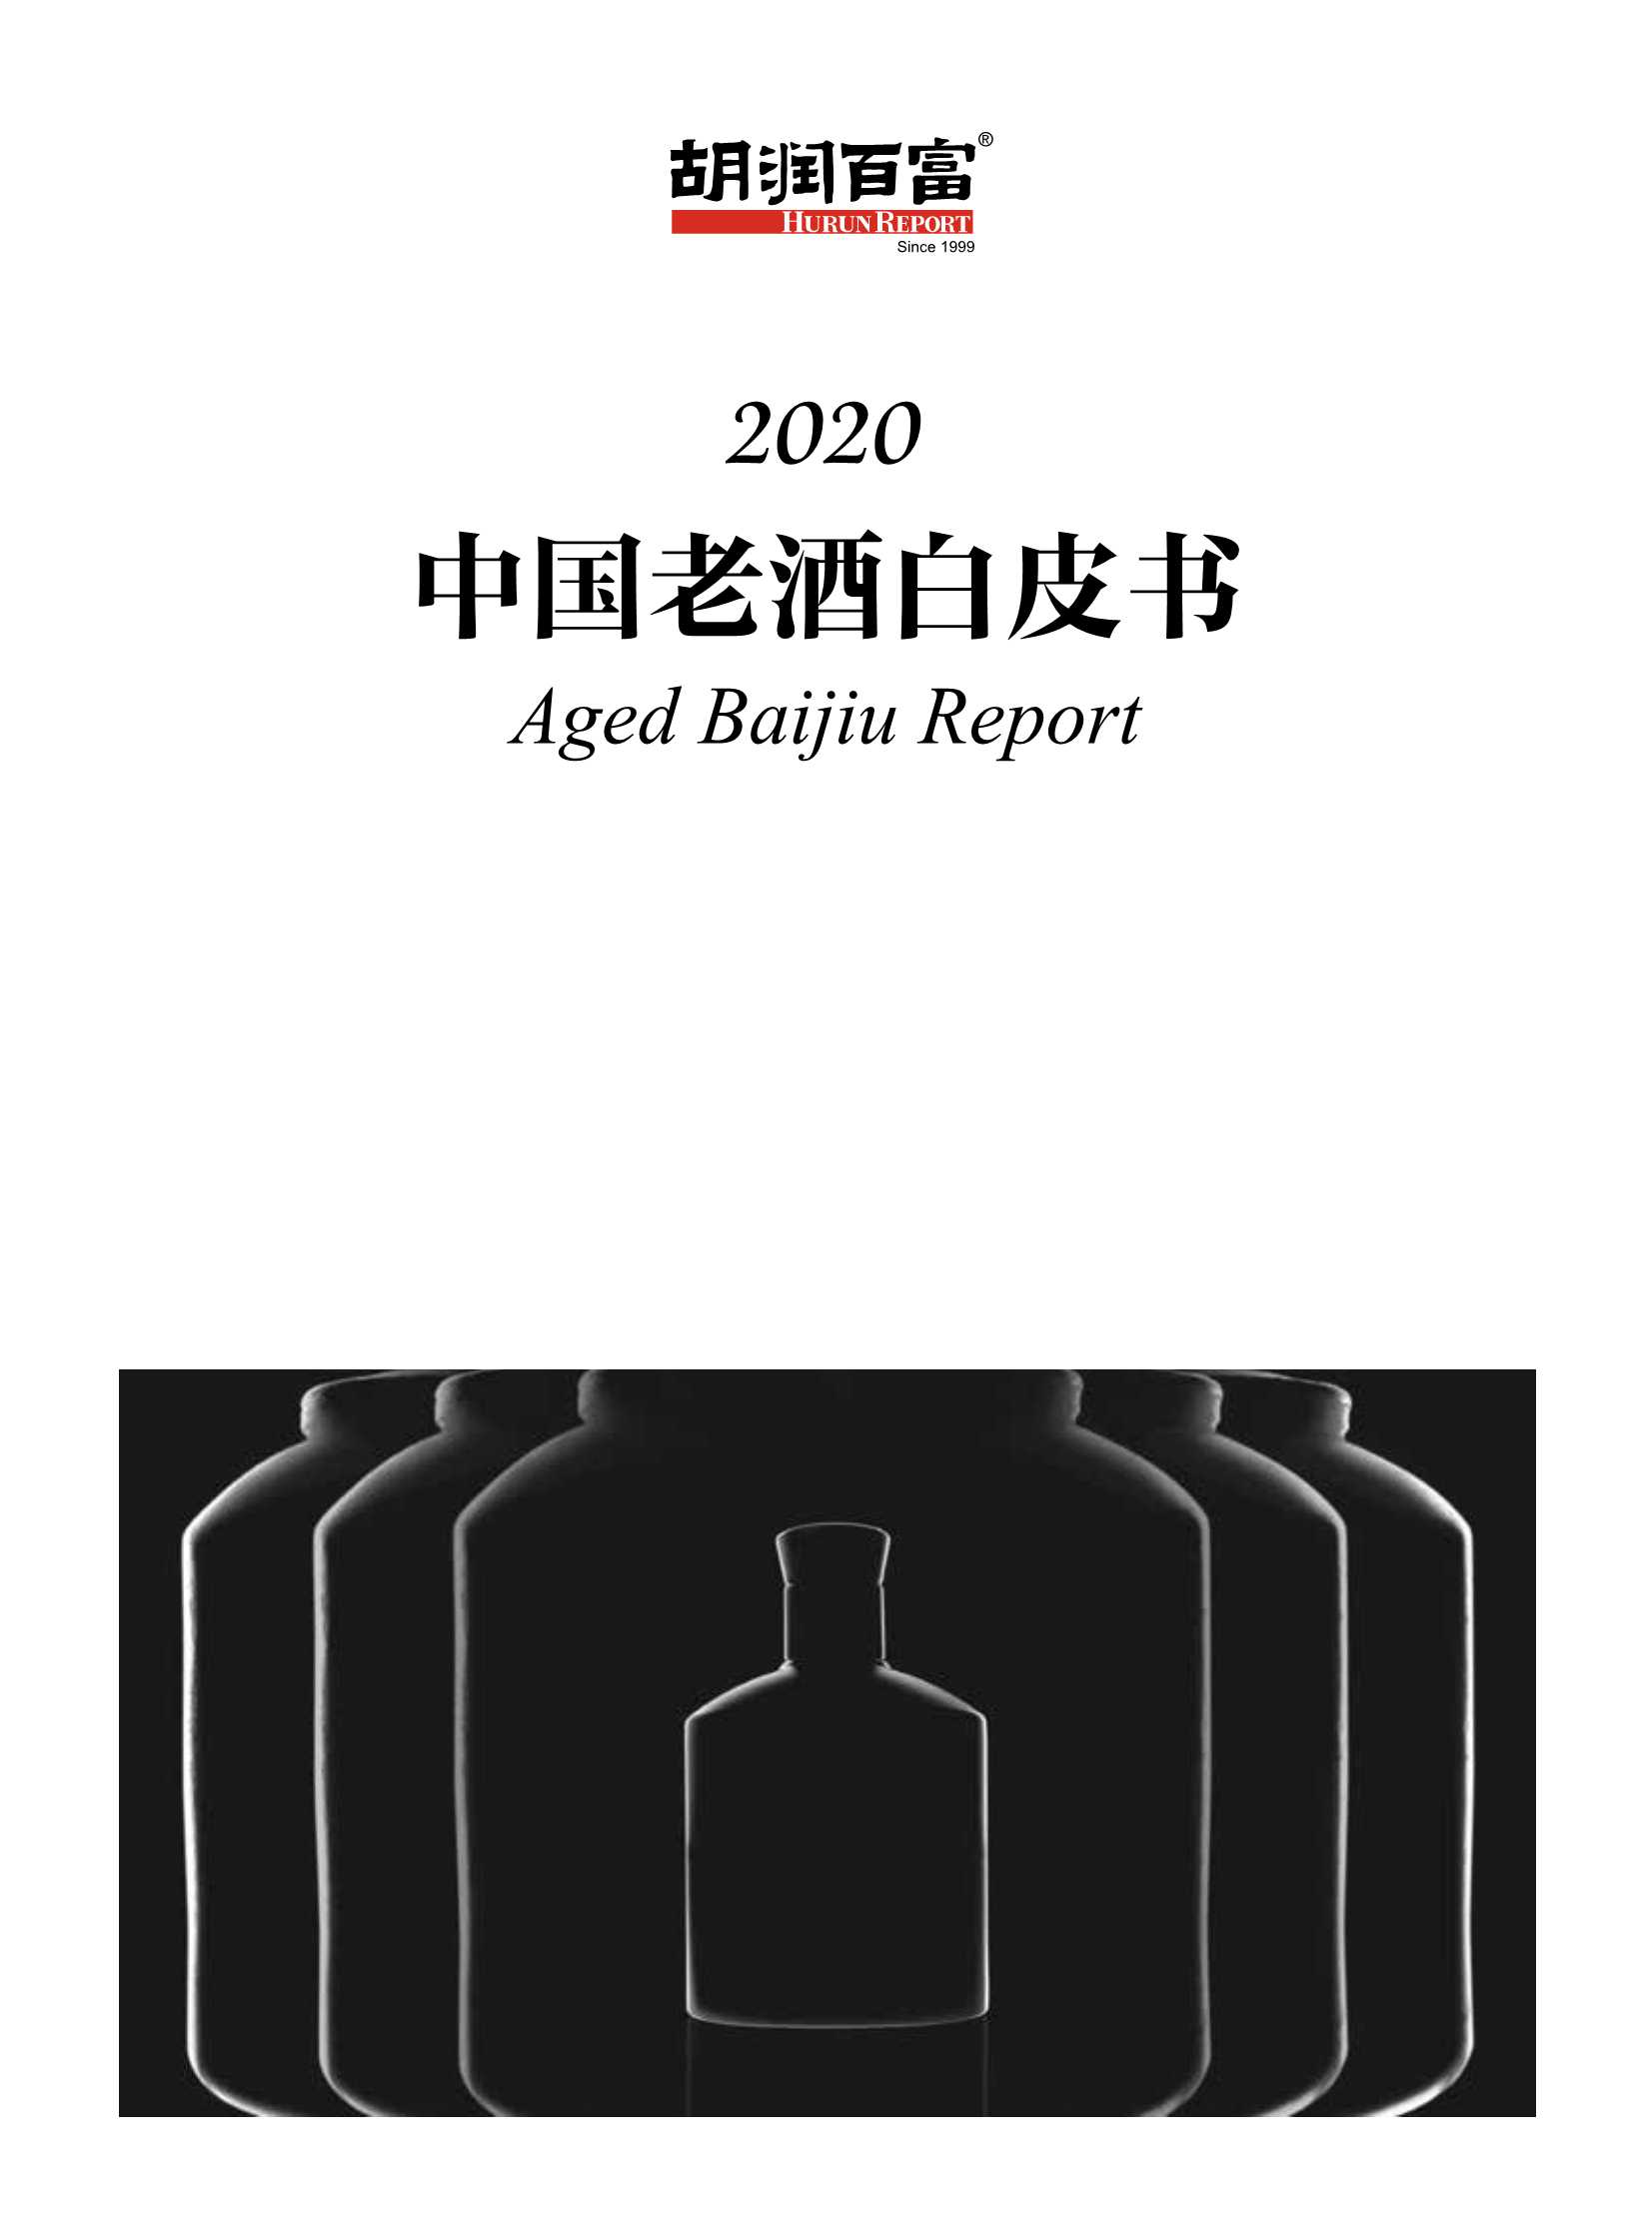 胡润百富发布《2020中国老酒白皮书》